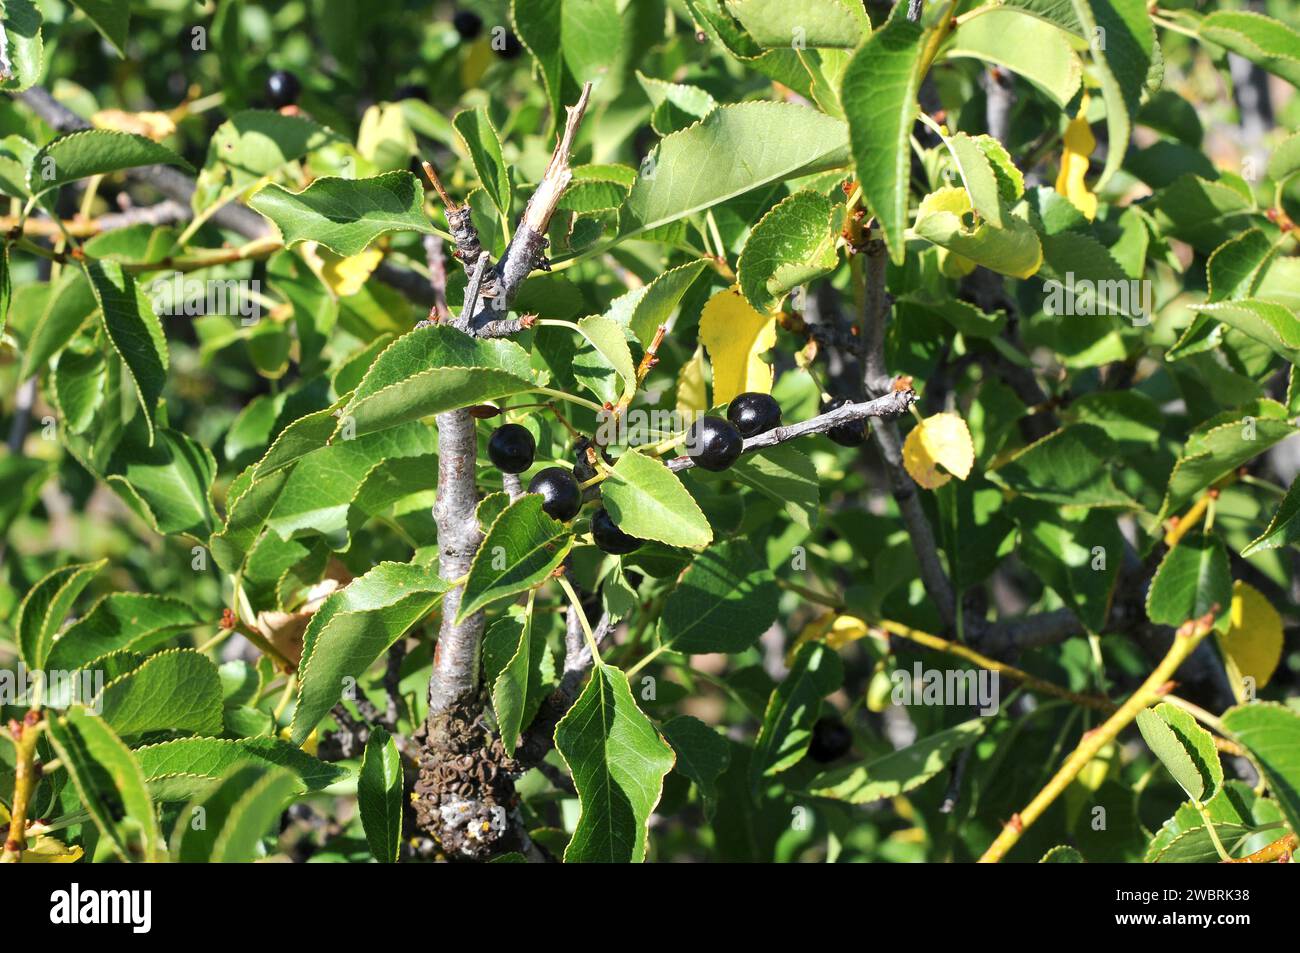 St. Le cerisier de Lucie (Prunus mahaleb) est un arbuste à feuilles caduques ou un petit arbre originaire du bassin méditerranéen. Ses graines fournissent une essence utilisée pour la cuisson. Mat Banque D'Images